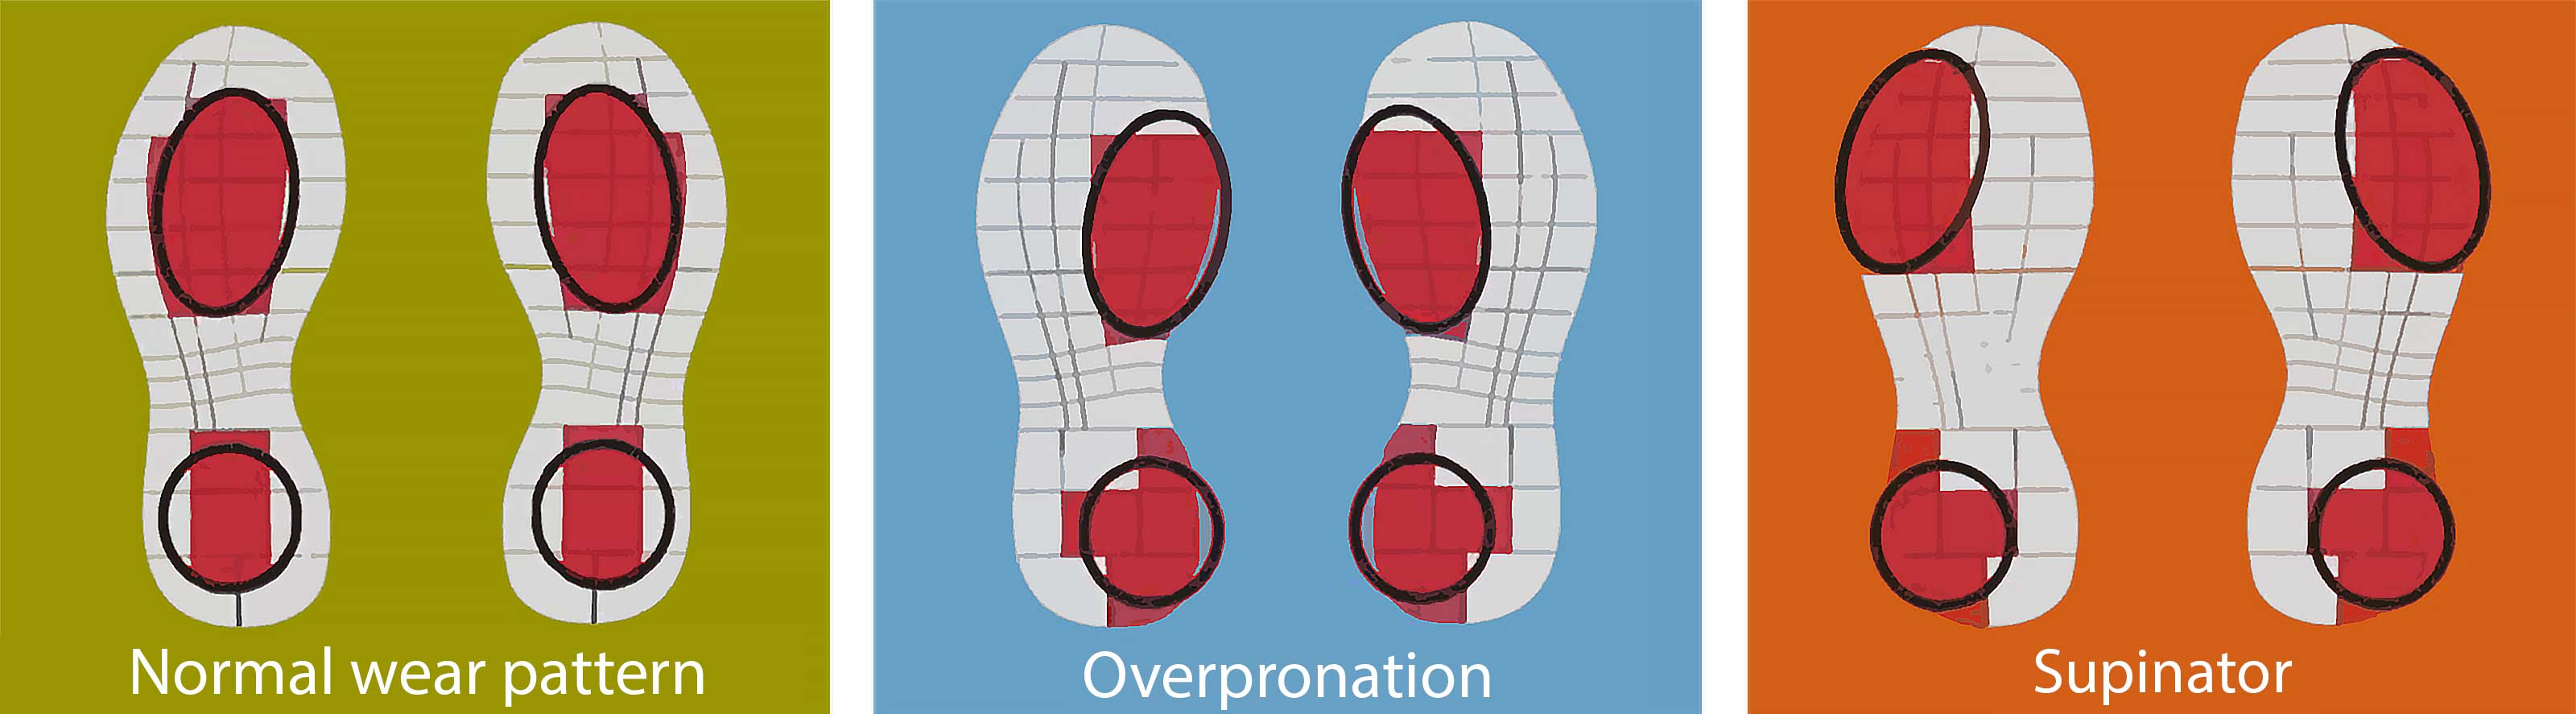 Shoe wear patterns showing normal wear, overpronation wear and supinator wear